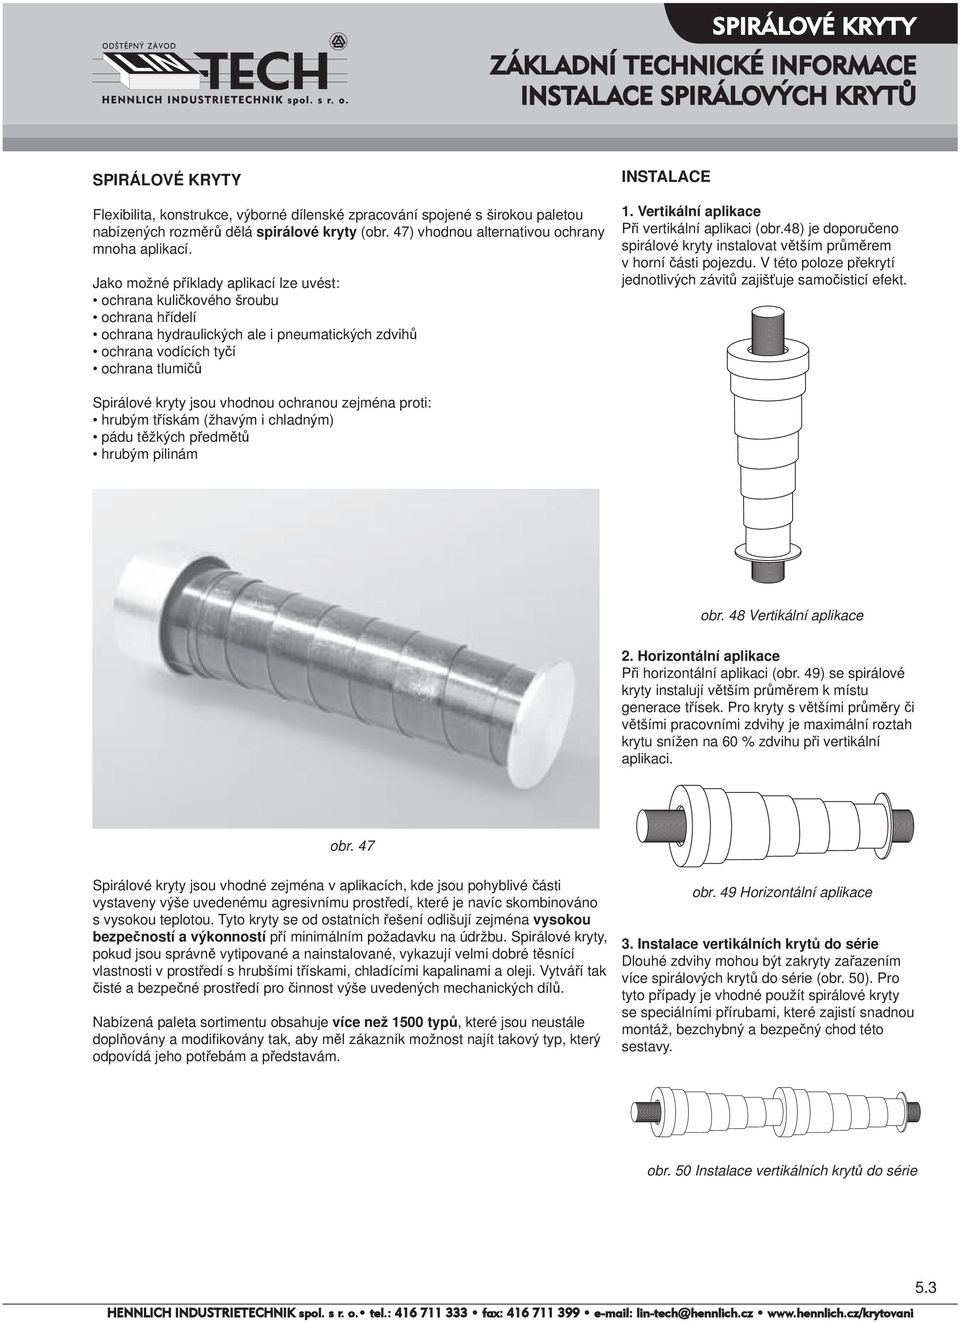 Jako možné příklady aplikací lze uvést: ochrana kuličkového šroubu ochrana hřídelí ochrana hydraulických ale i pneumatických zdvihů ochrana vodících tyčí ochrana tlumičů INSTALACE 1.